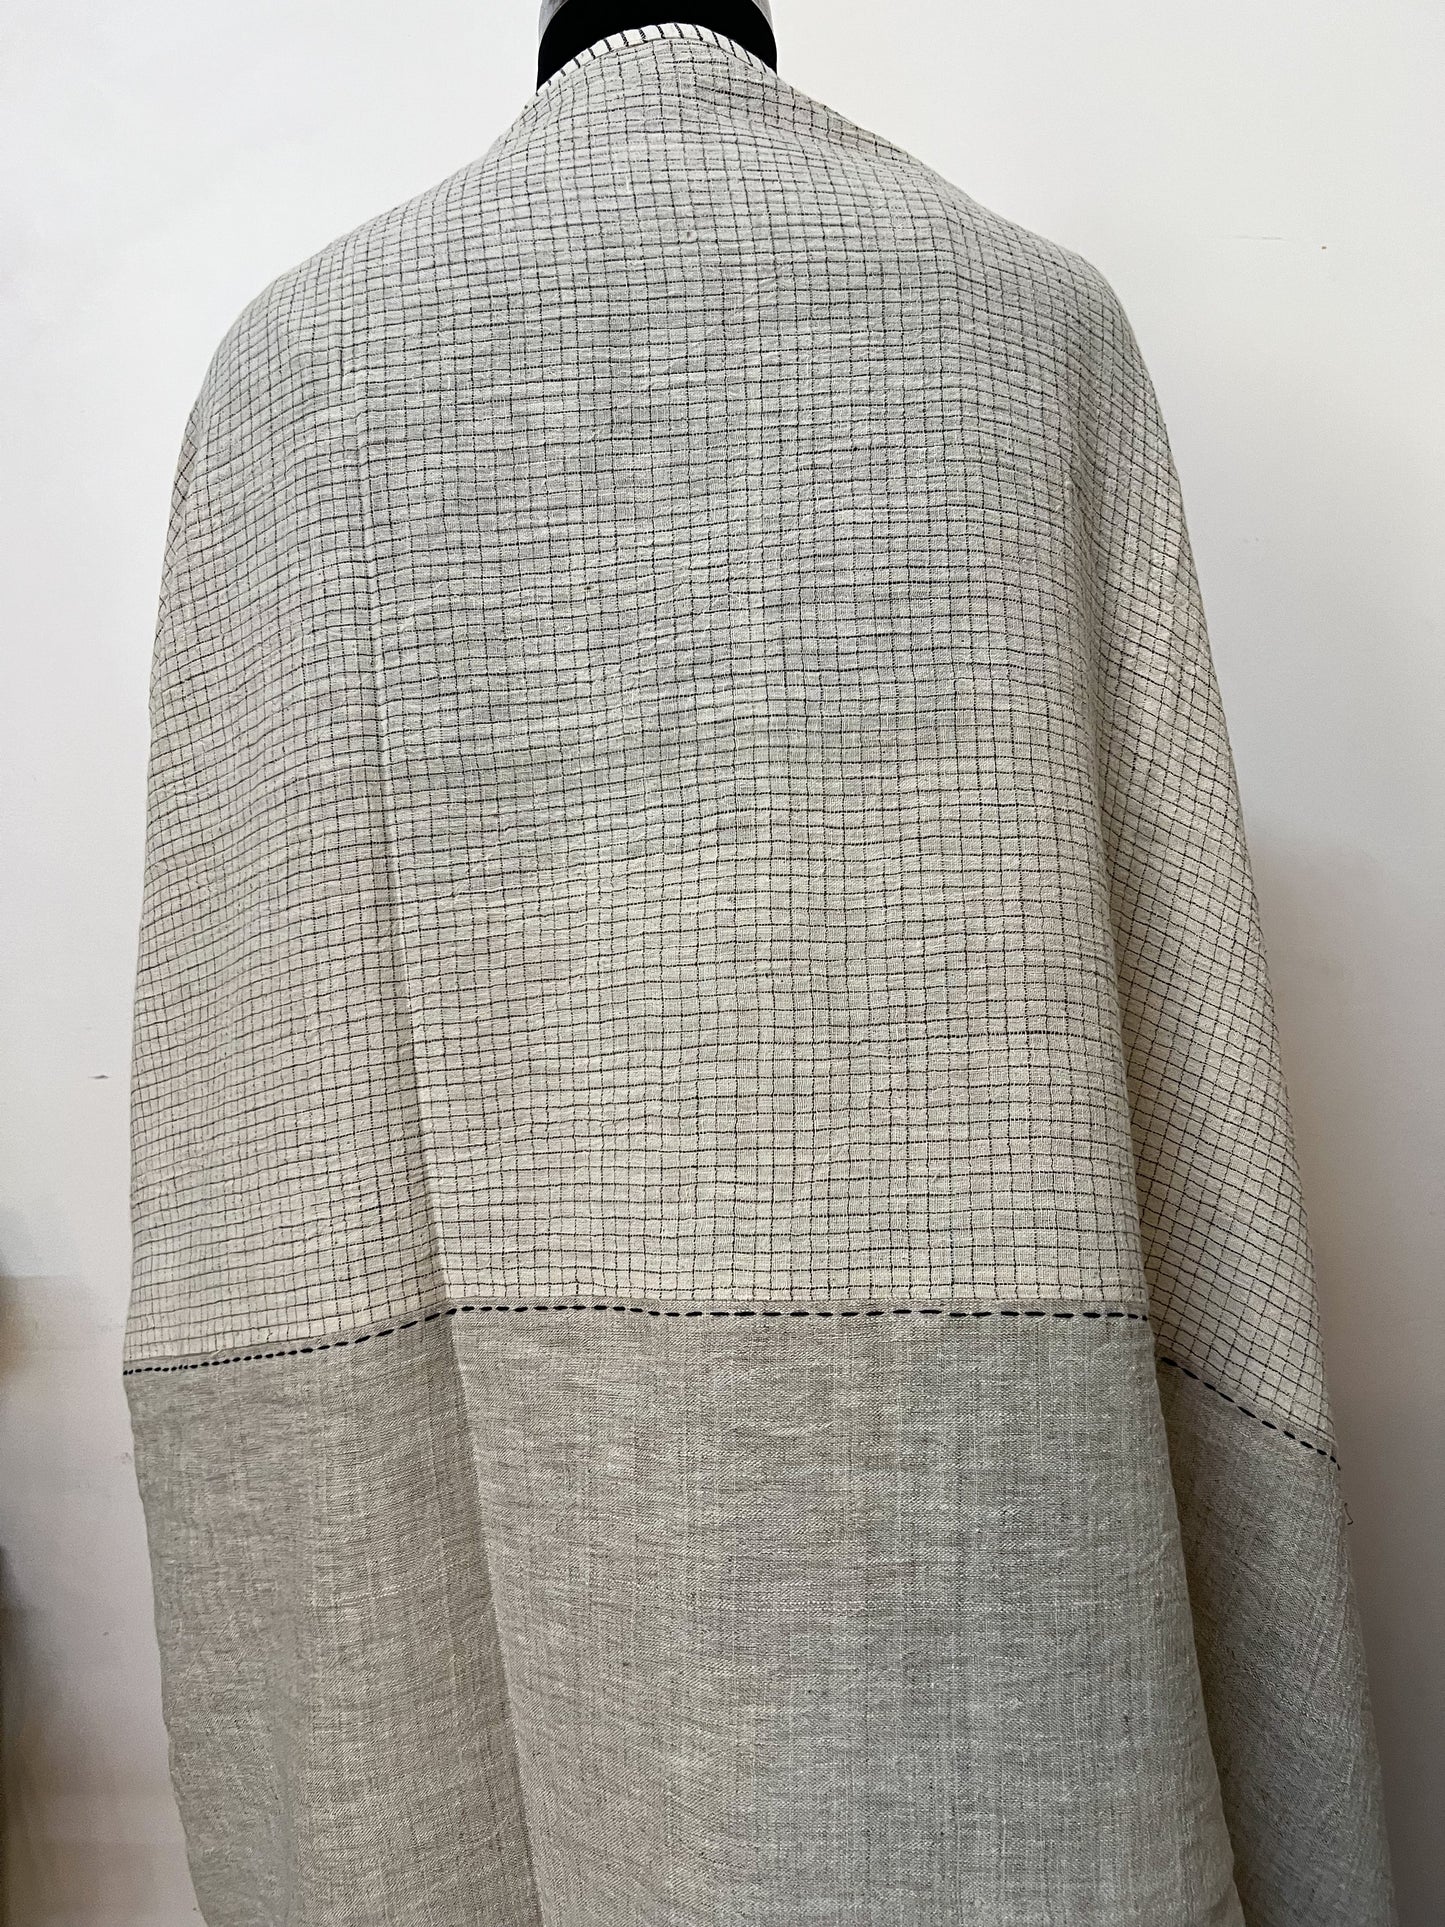 Patchwork Linen Organic Cotton Sari